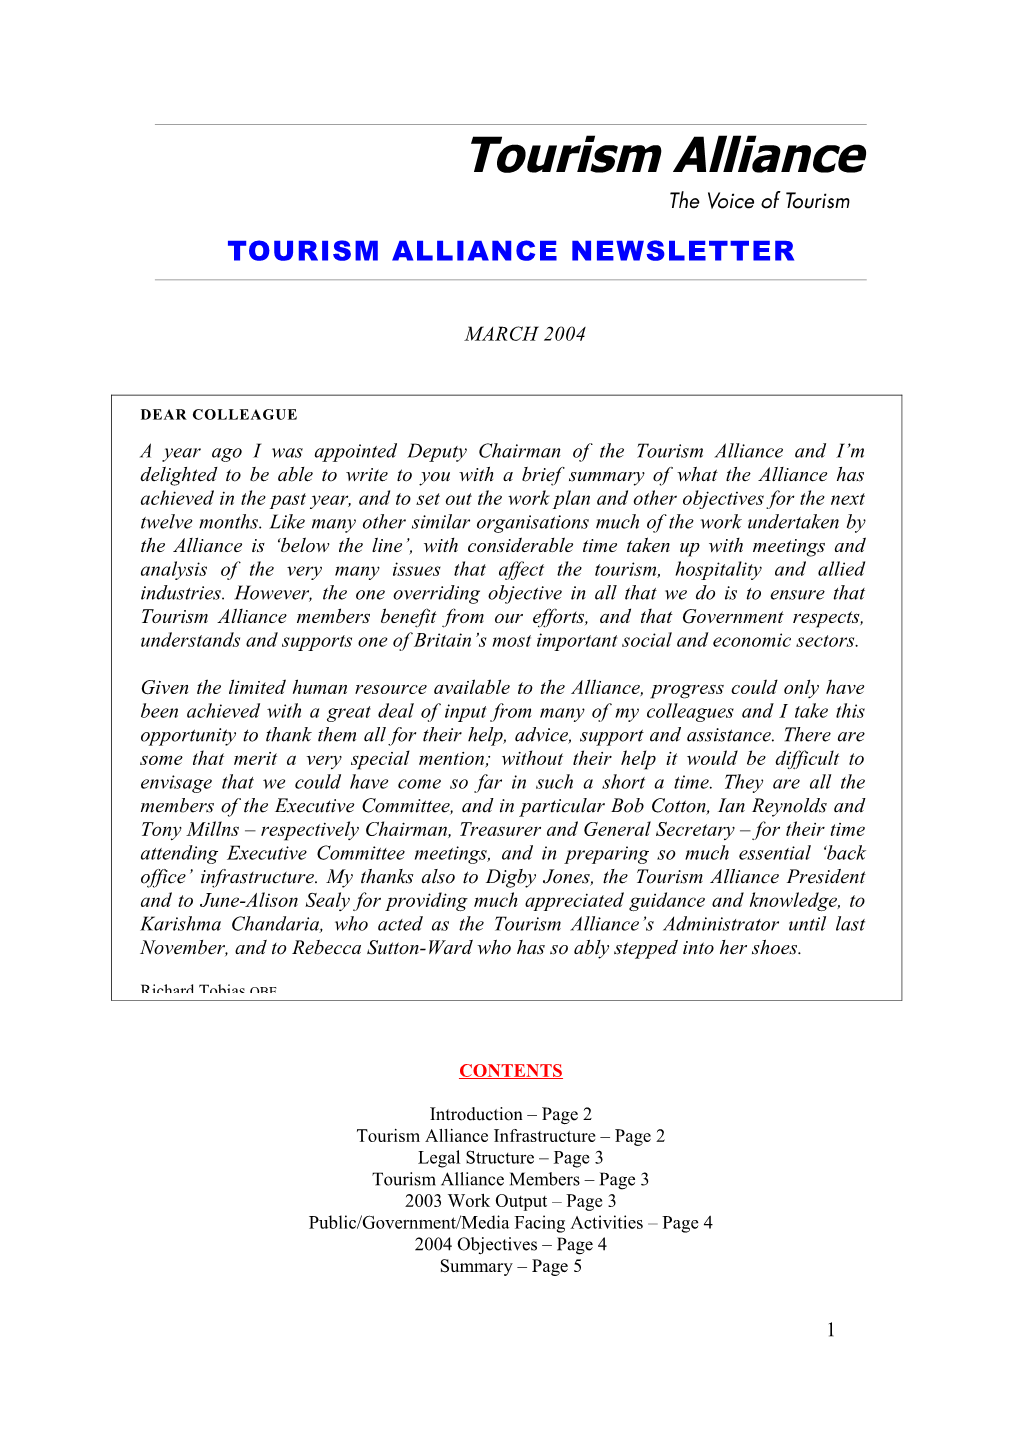 Tourism Alliance Briefing